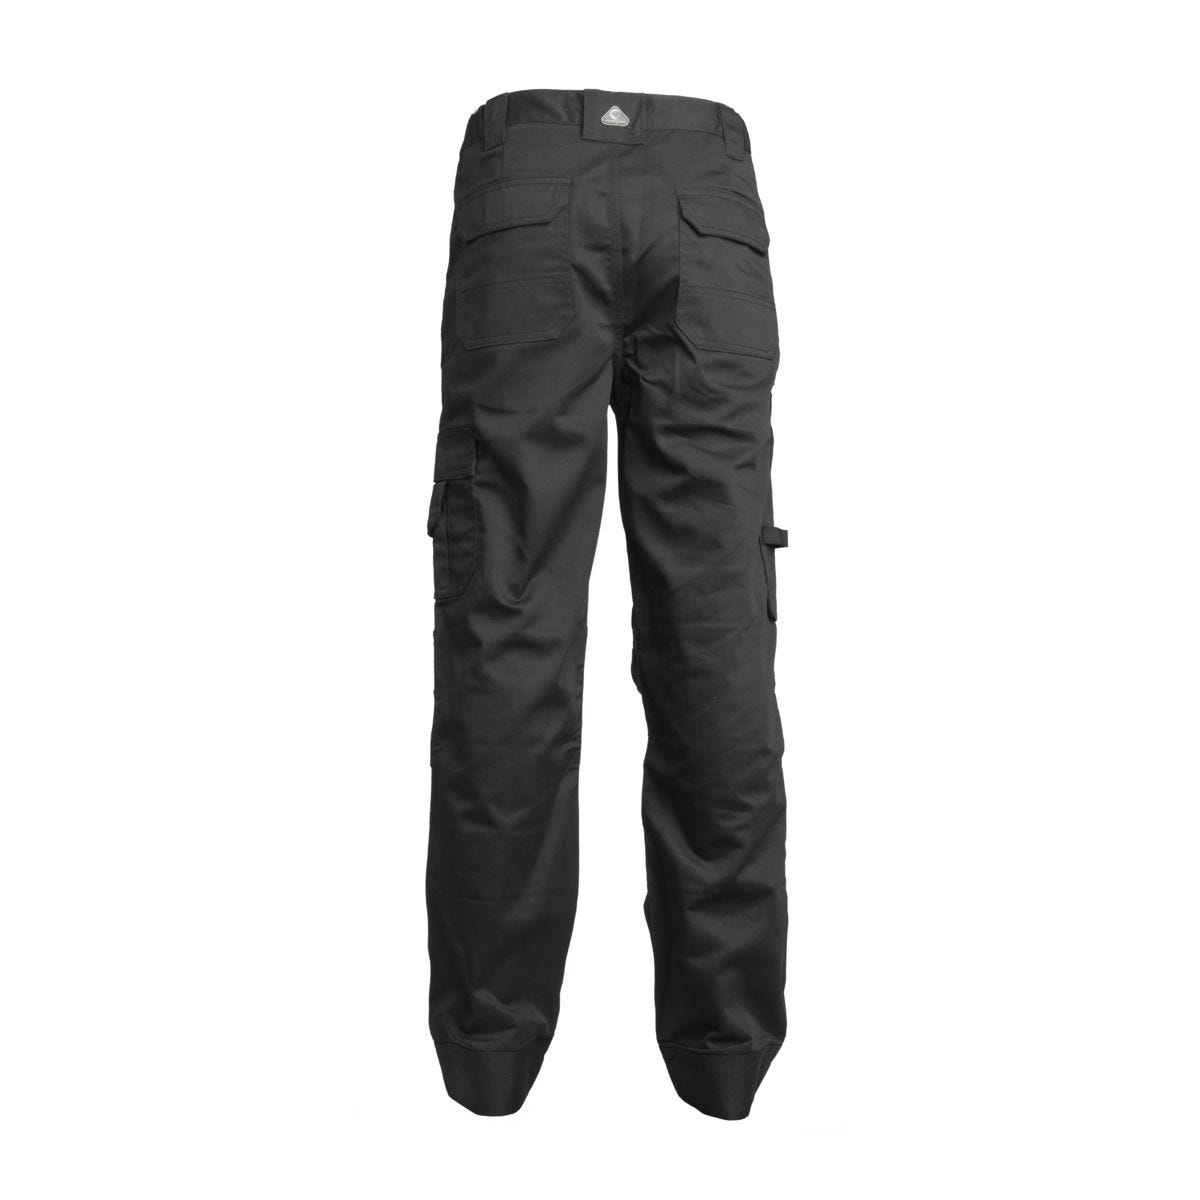 Pantalon CLASS noir - COVERGUARD - Taille XL 1